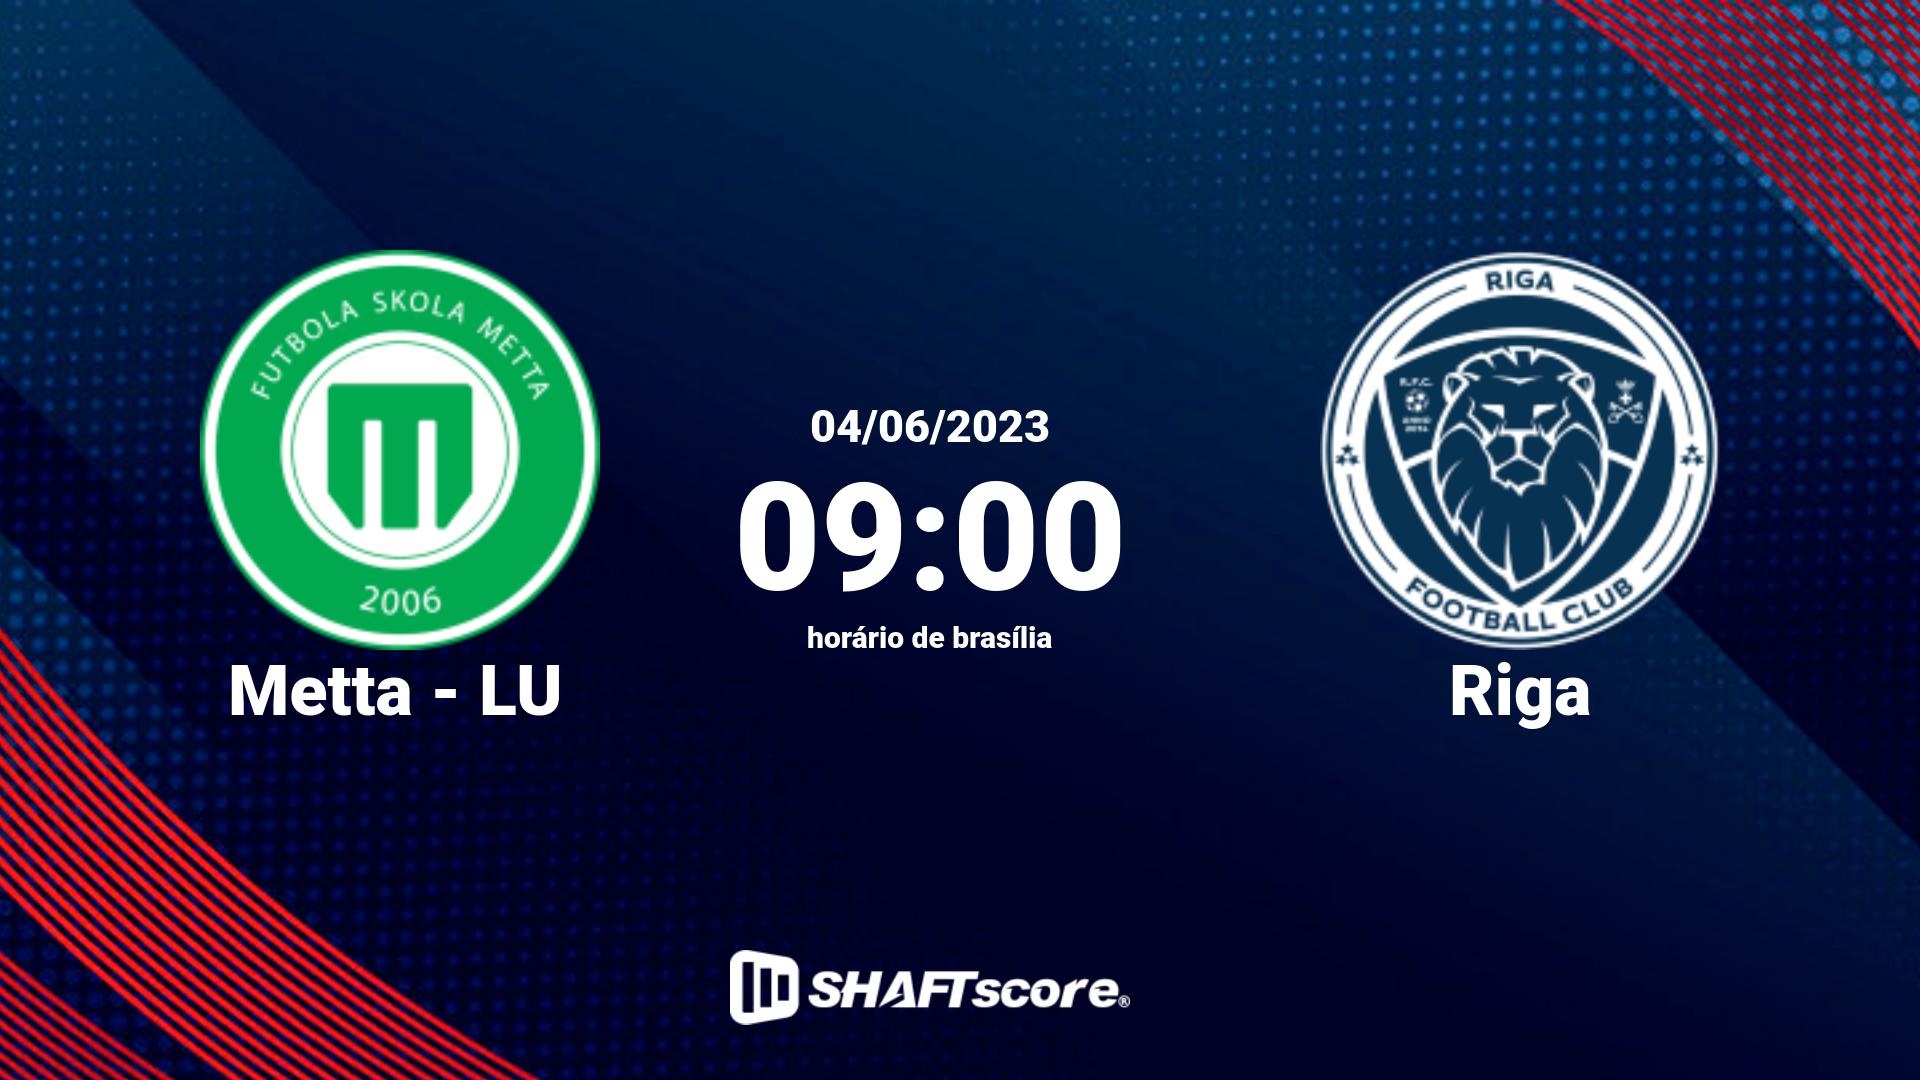 Estatísticas do jogo Metta - LU vs Riga 04.06 09:00